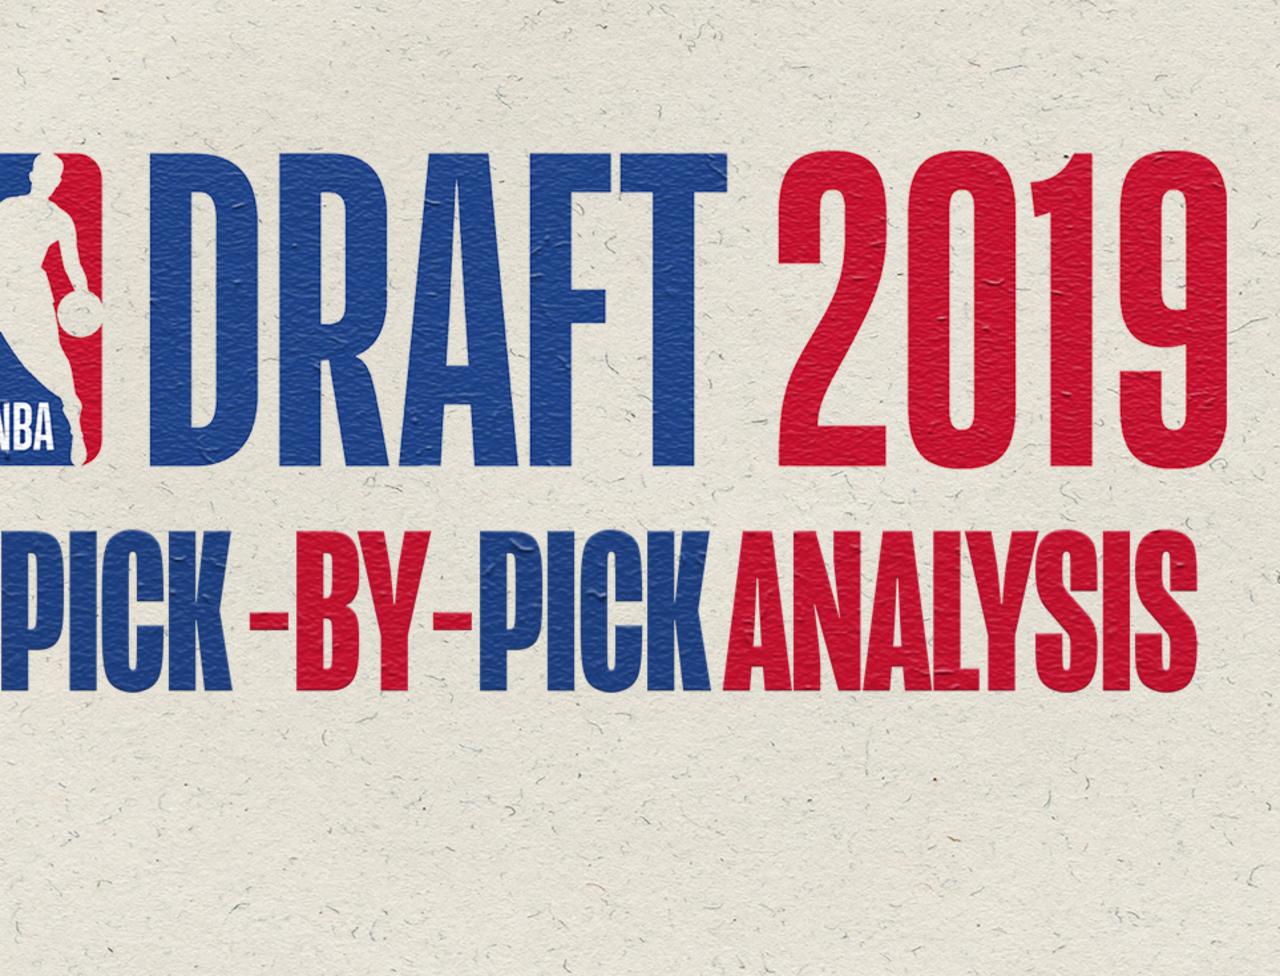 NBA Draft 2019: Pick-by-pick analysis.